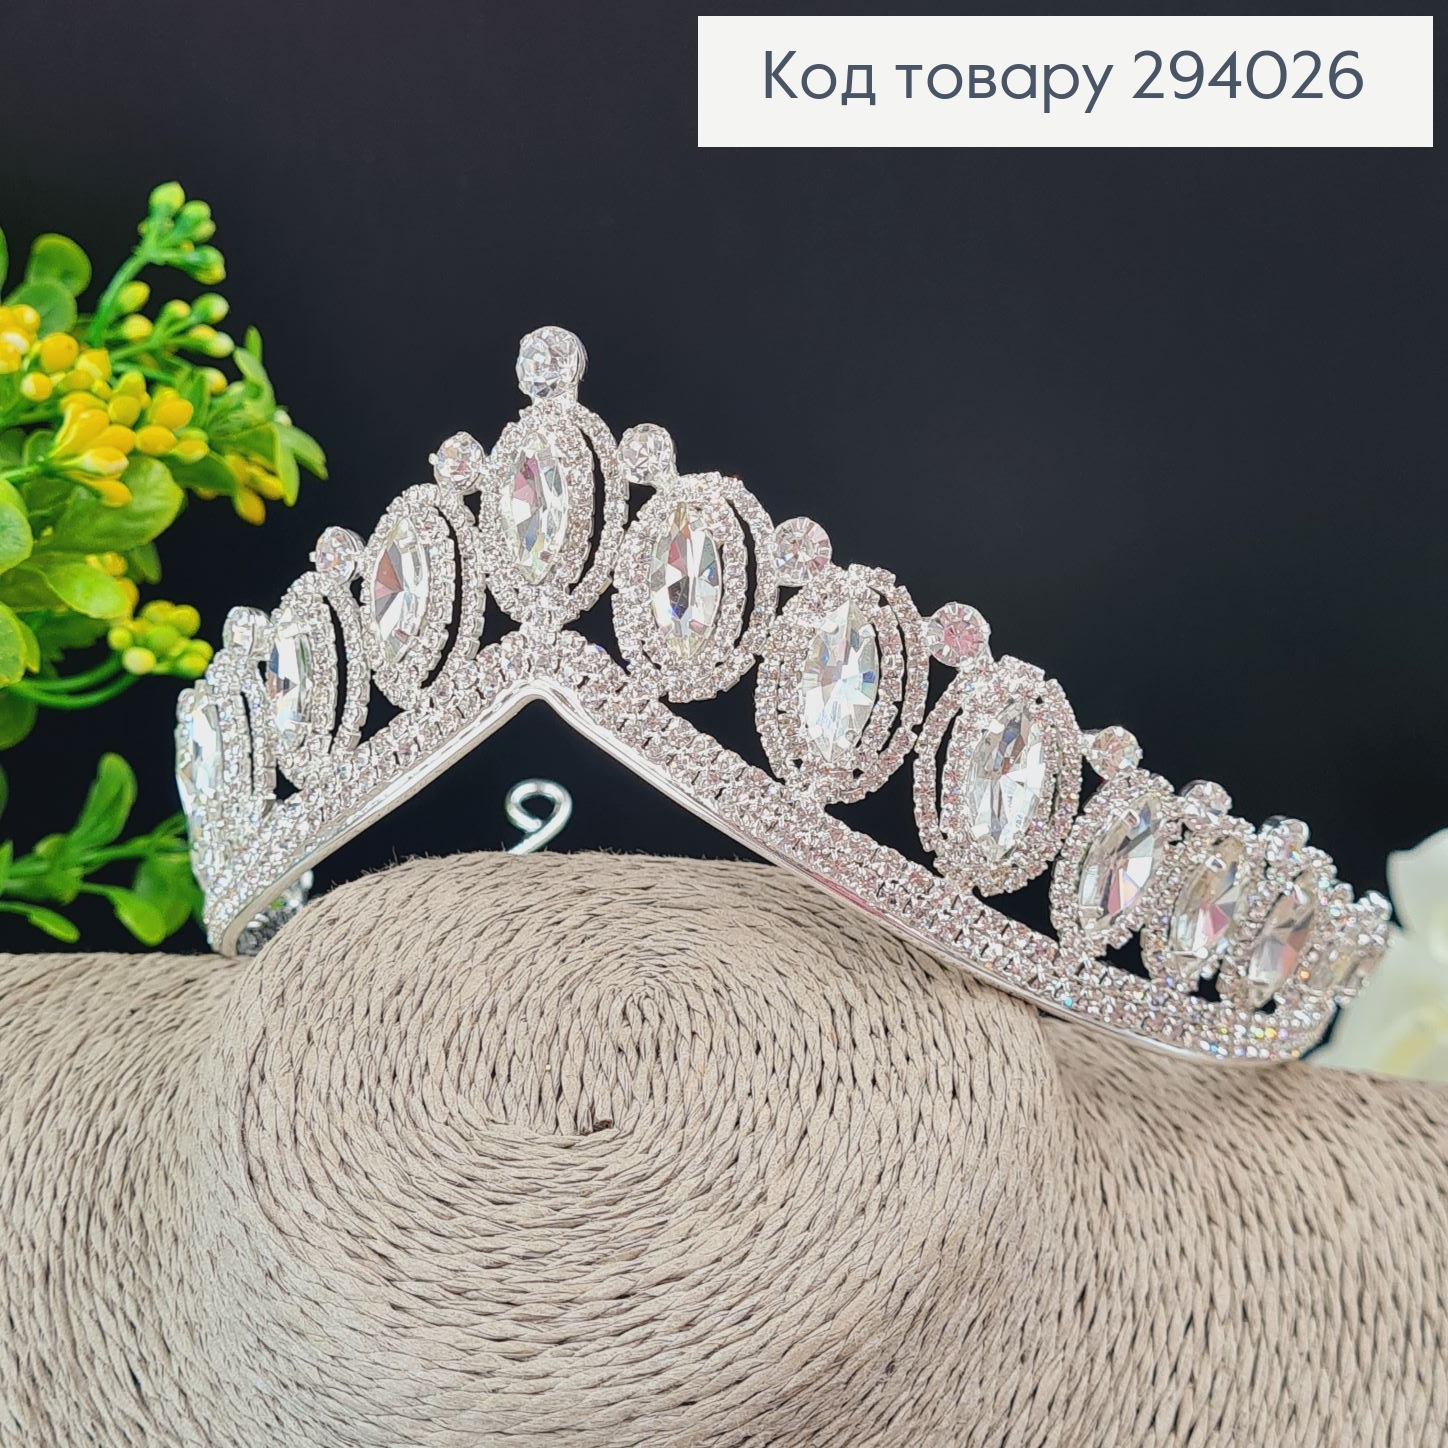 Діадема весільна Королівська з камінцями 294026 фото 2